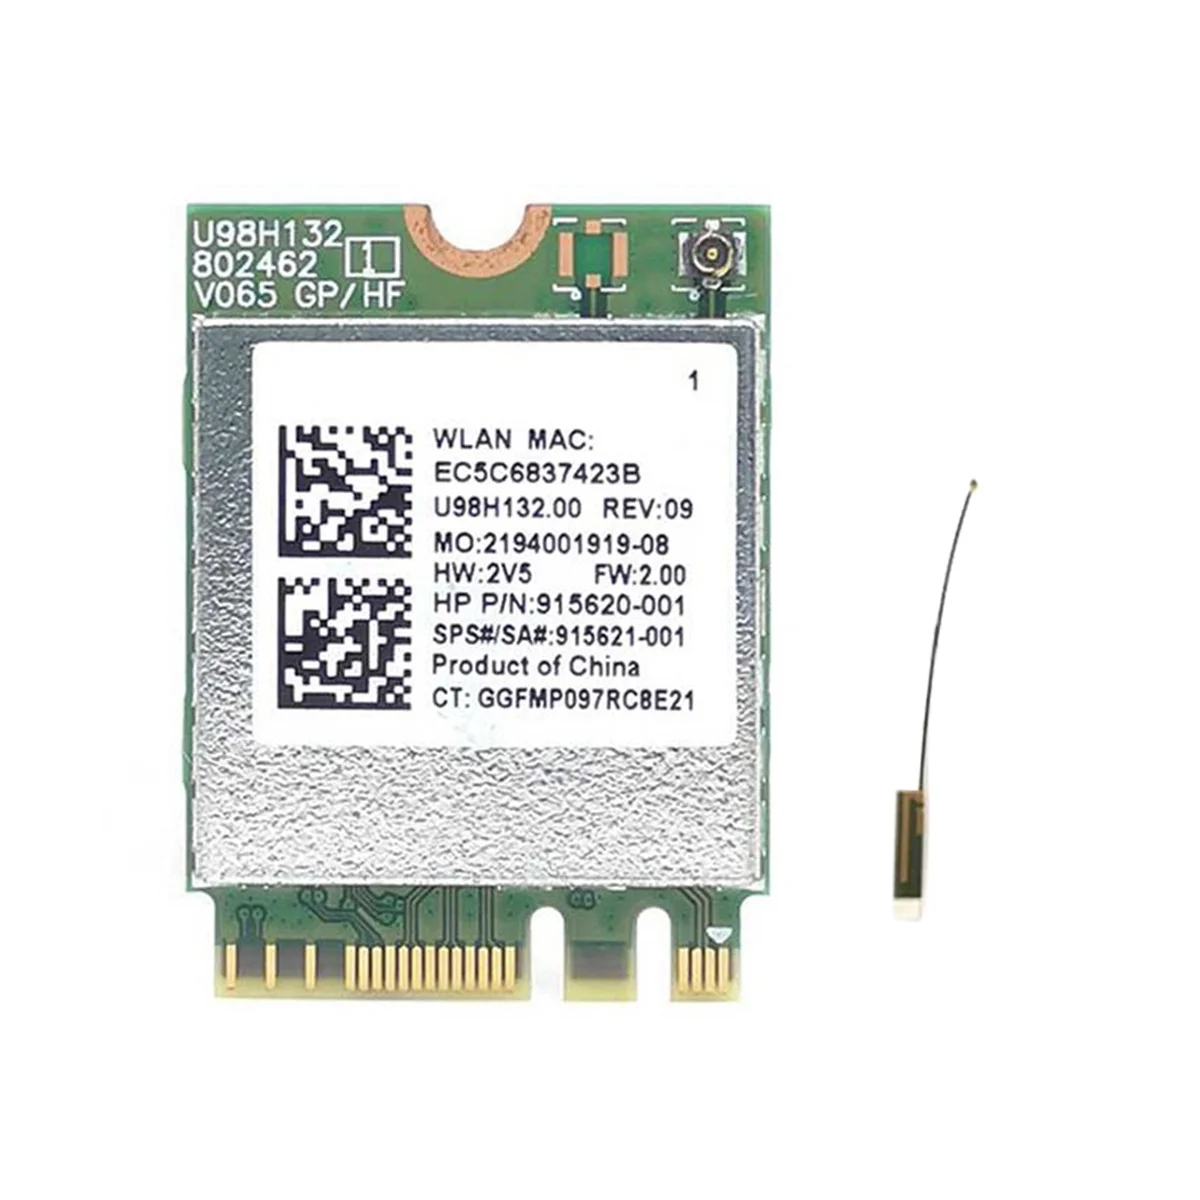 

RTL8821CE 802.11AC 1X1 Wi-Fi + BT 4,2 комбинированный адаптер карта SPS 915621-001 беспроводная карта Netowrk для Hp ProBook 450 G5 Series